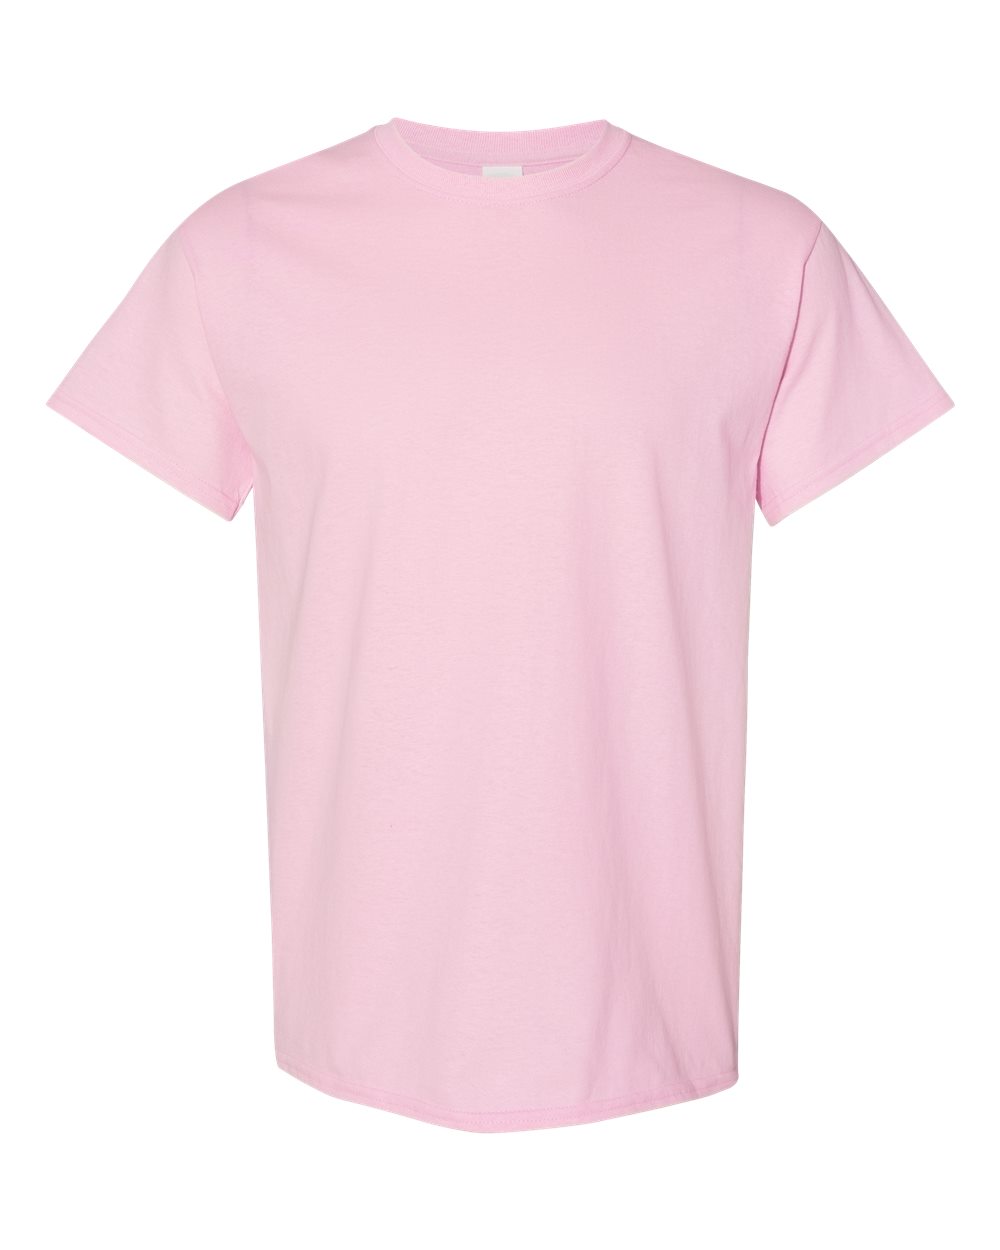 Seltzer Slut Adult Unisex Cotton T-Shirt - 8